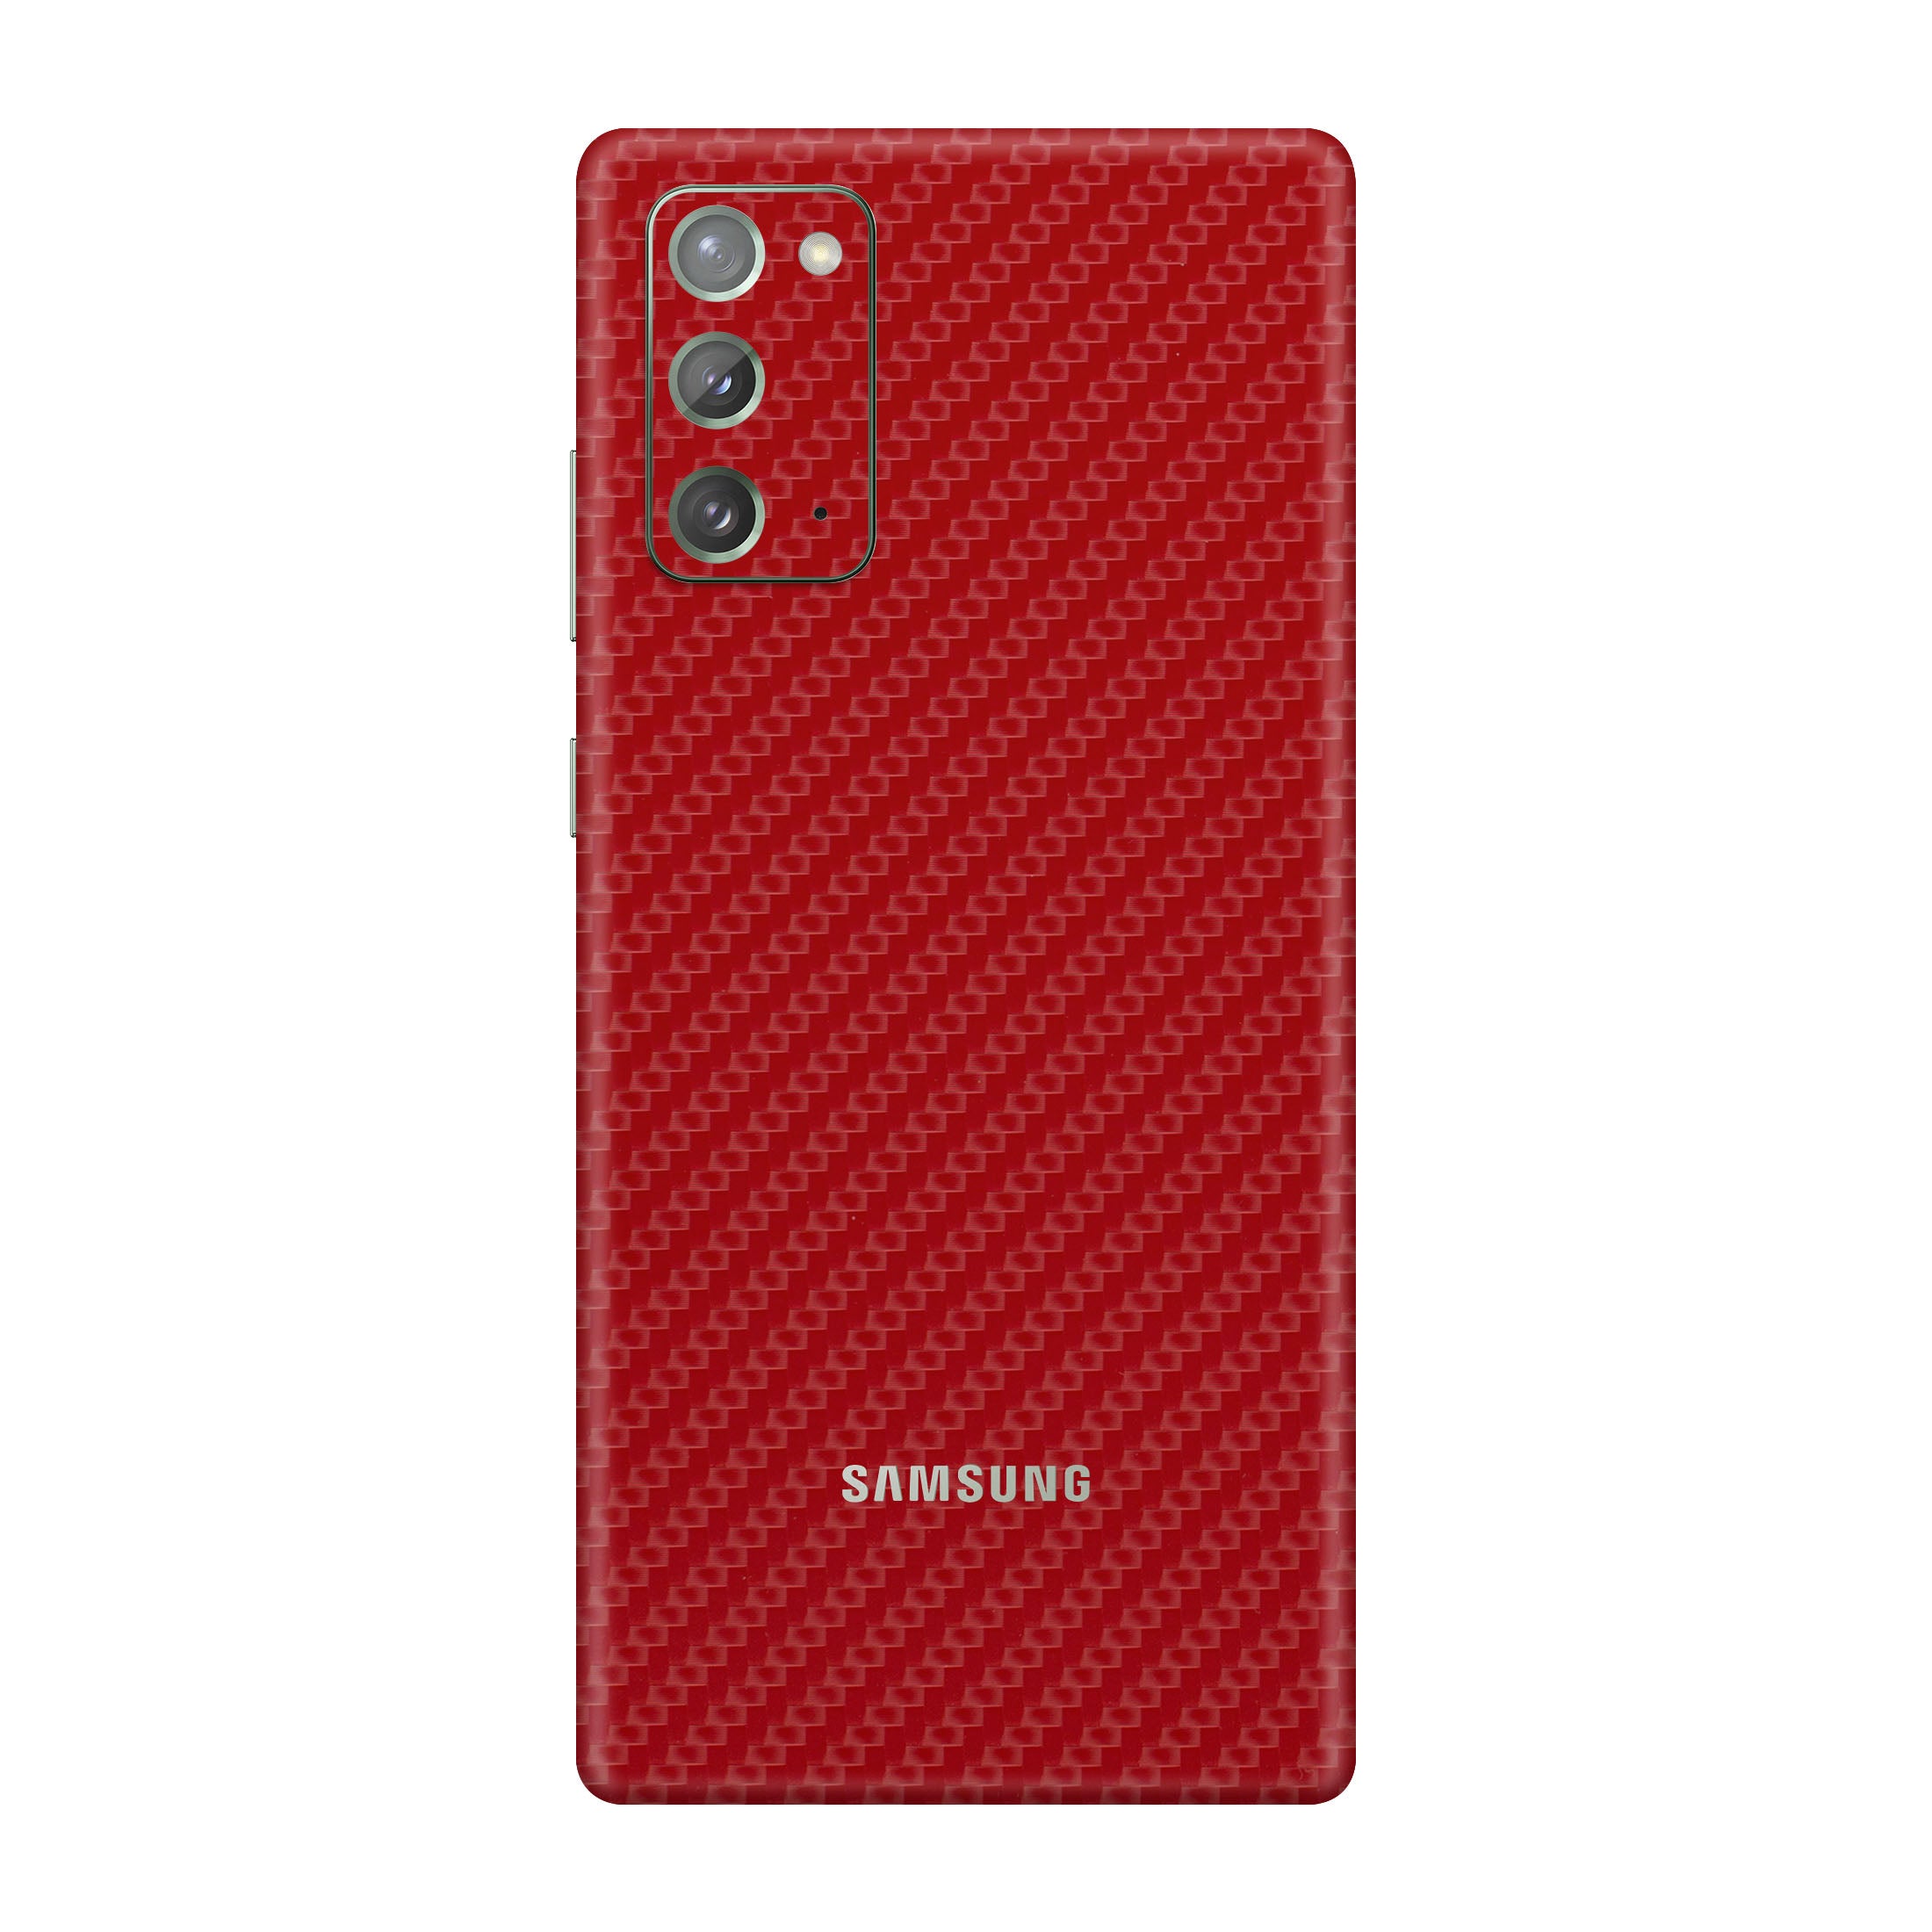 Carbon Fiber Red Skin for Samsung Note 20